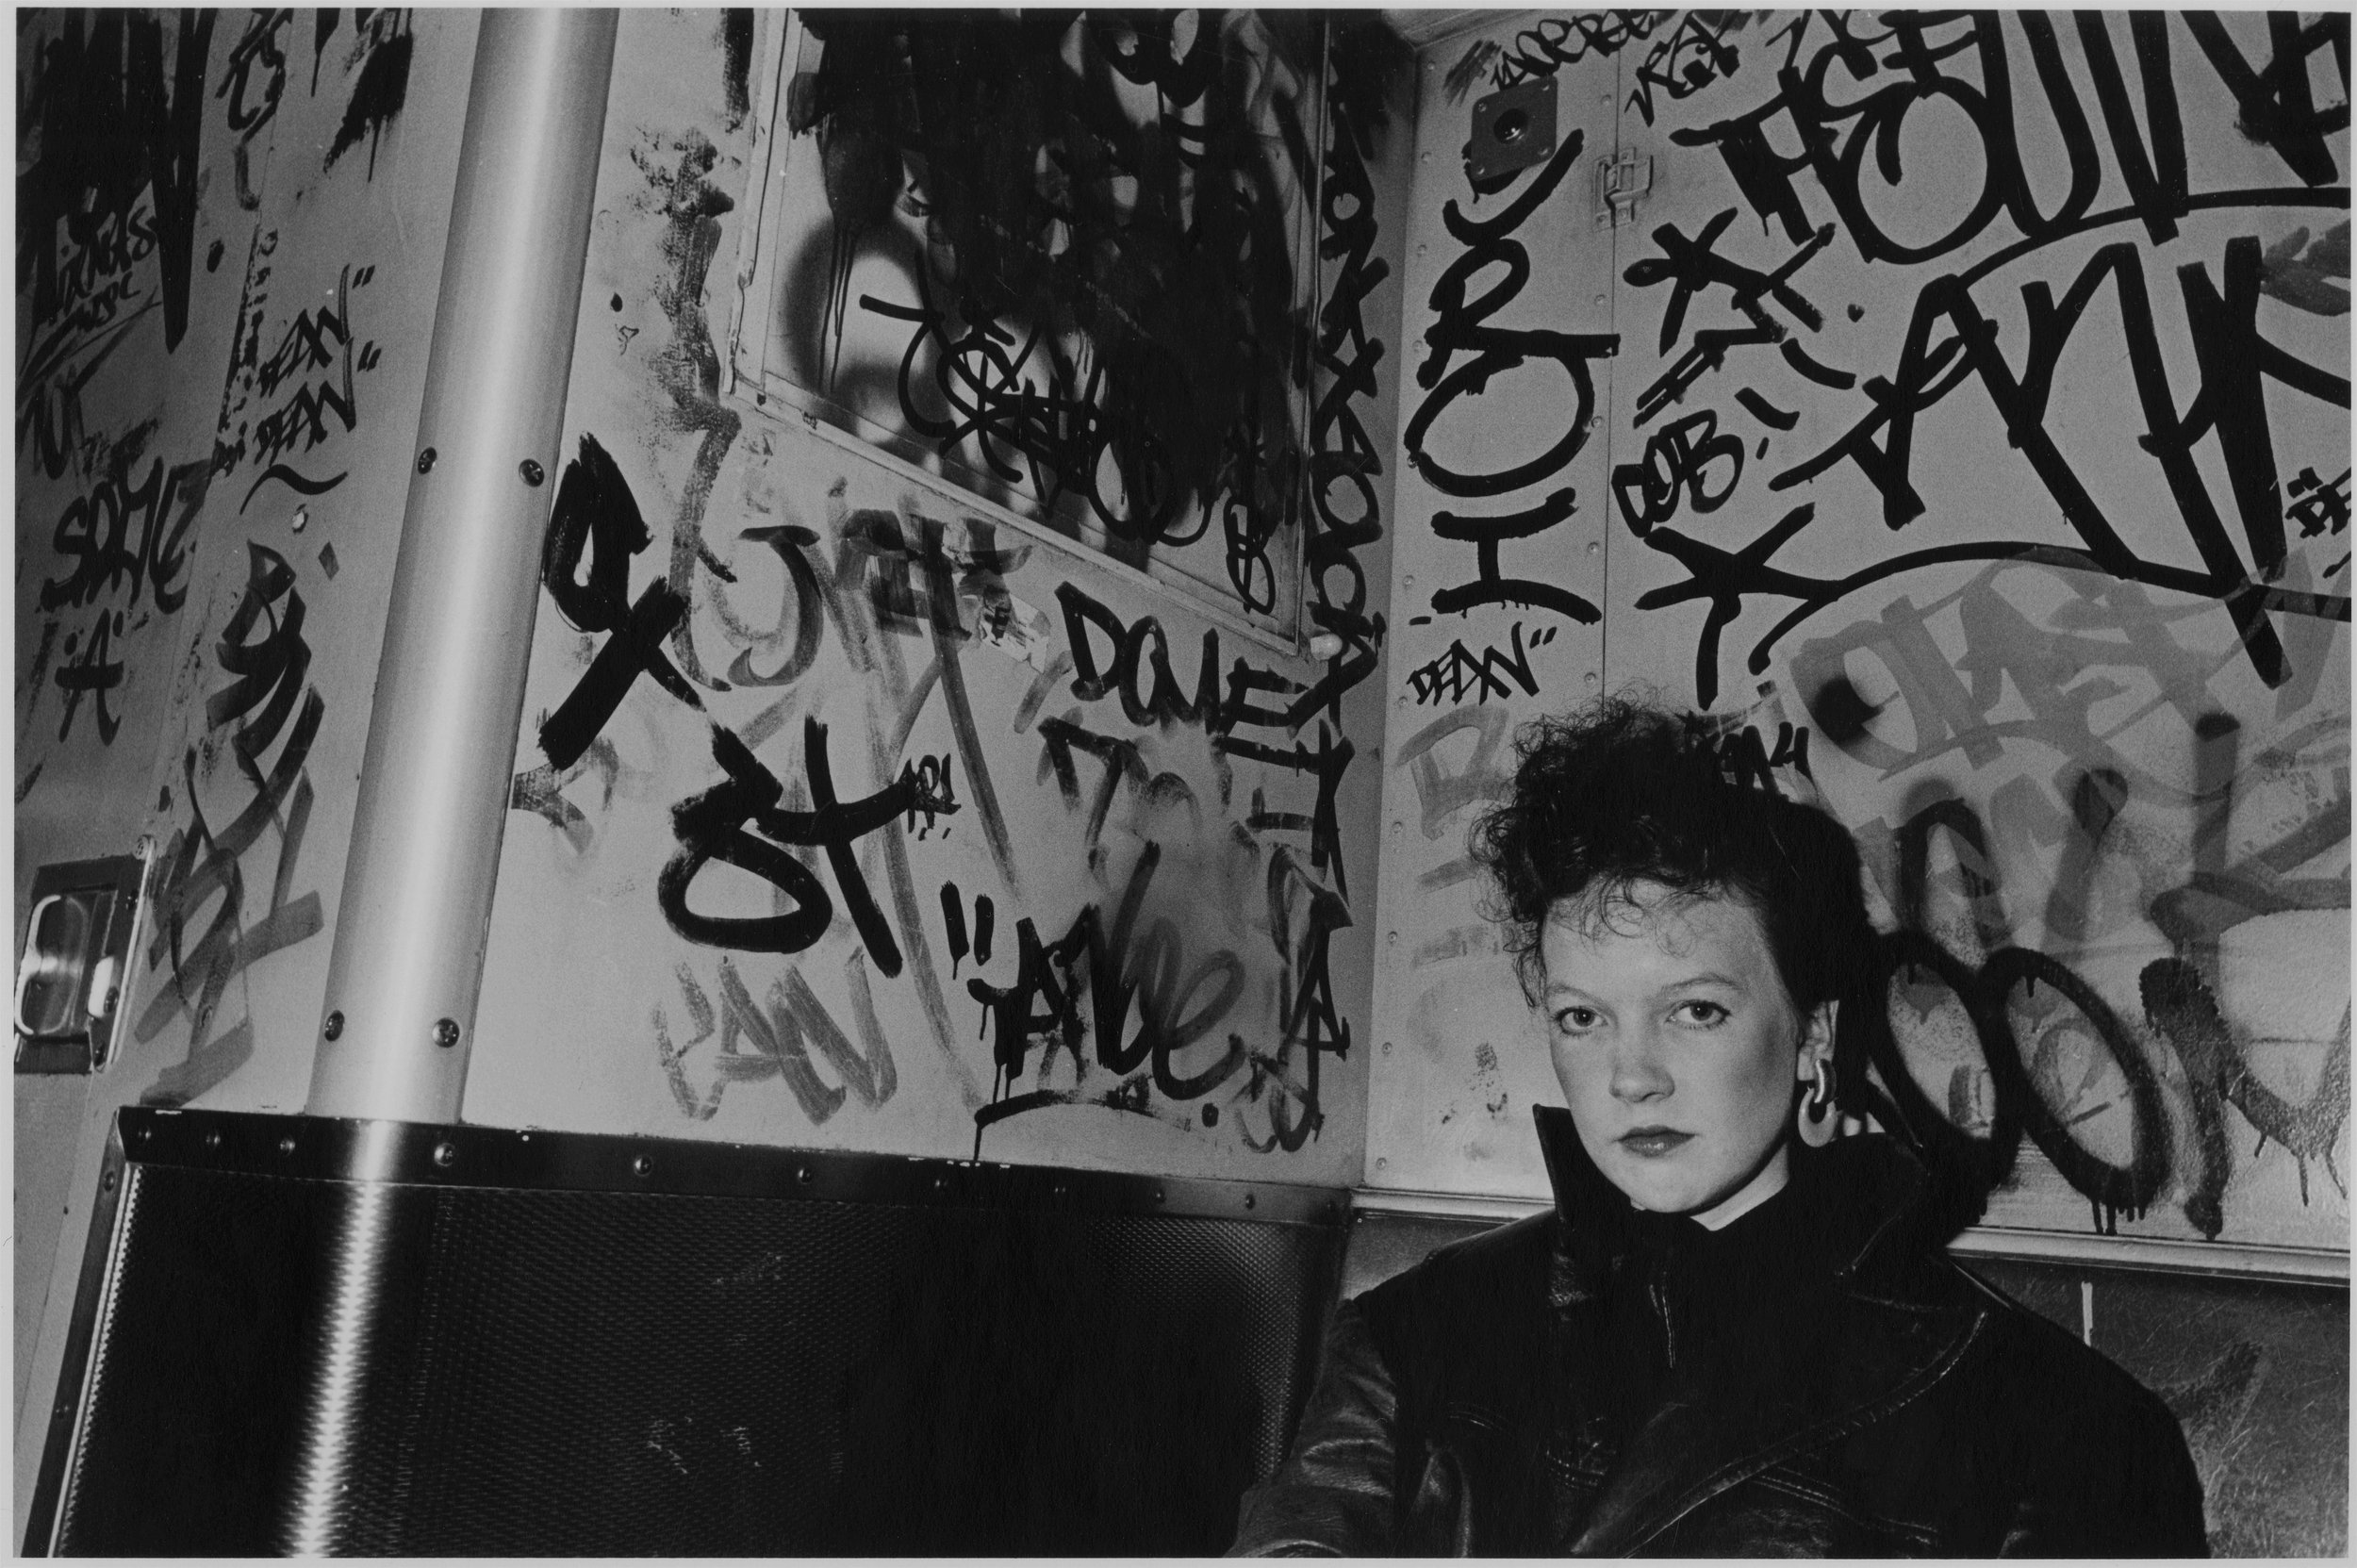 punk (sw) on graff train, nyc, 1981